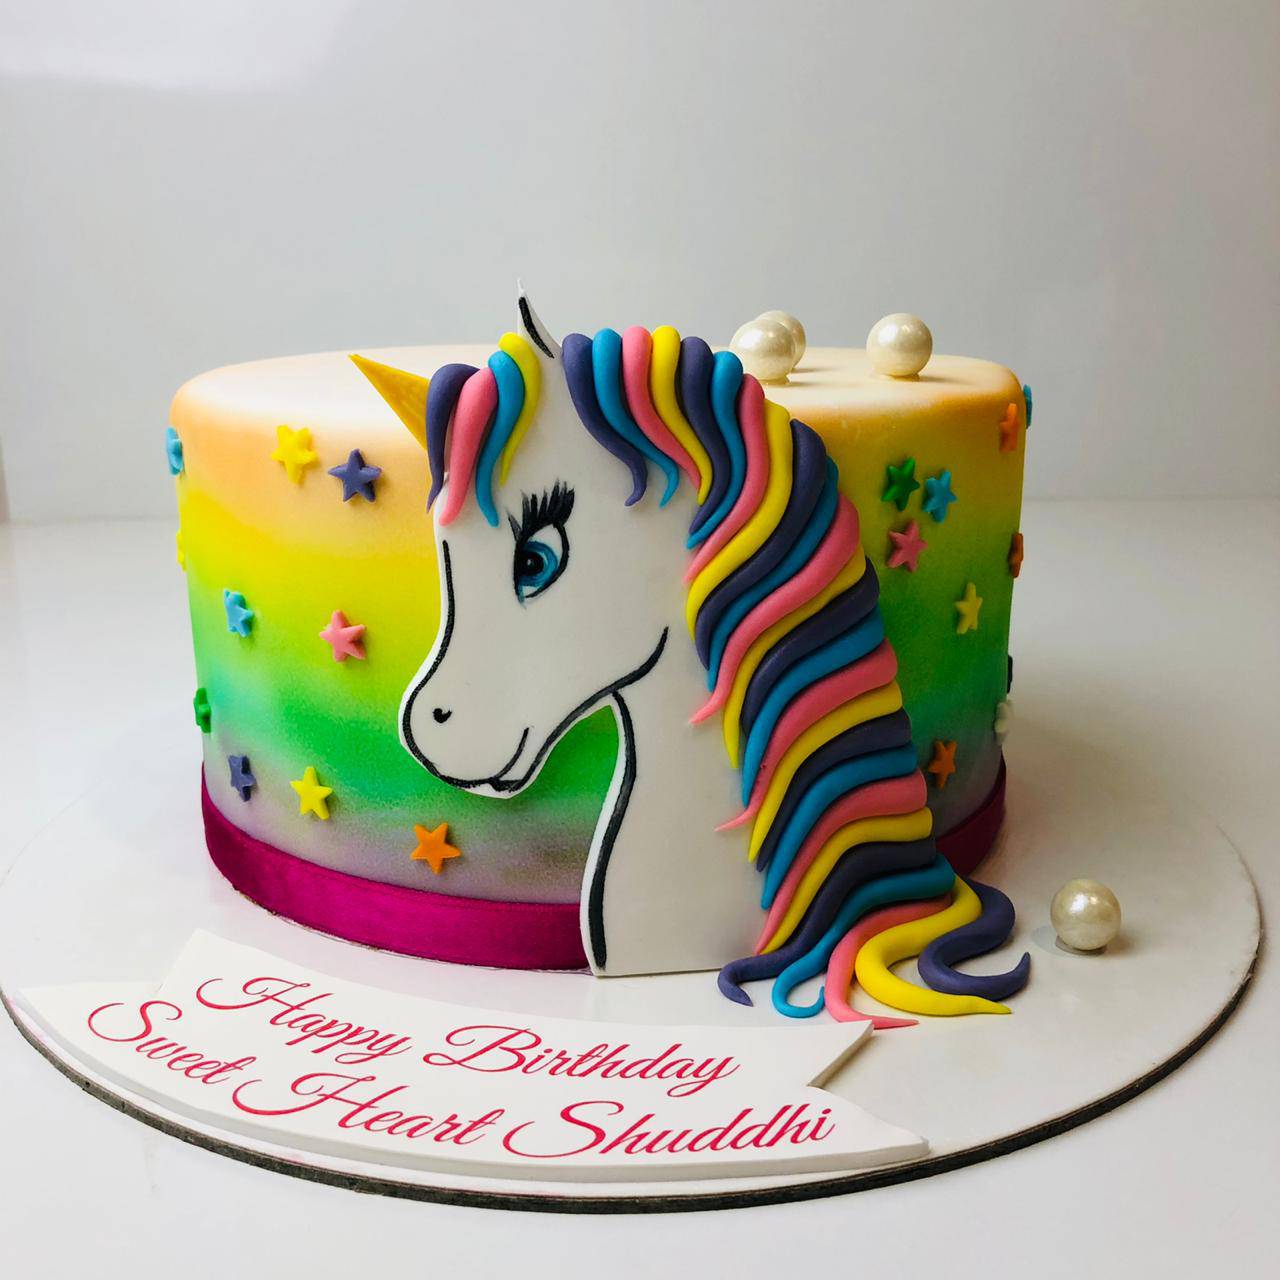 9 unicorn cake fails 100% guaranteed to make you smile | New Idea Magazine